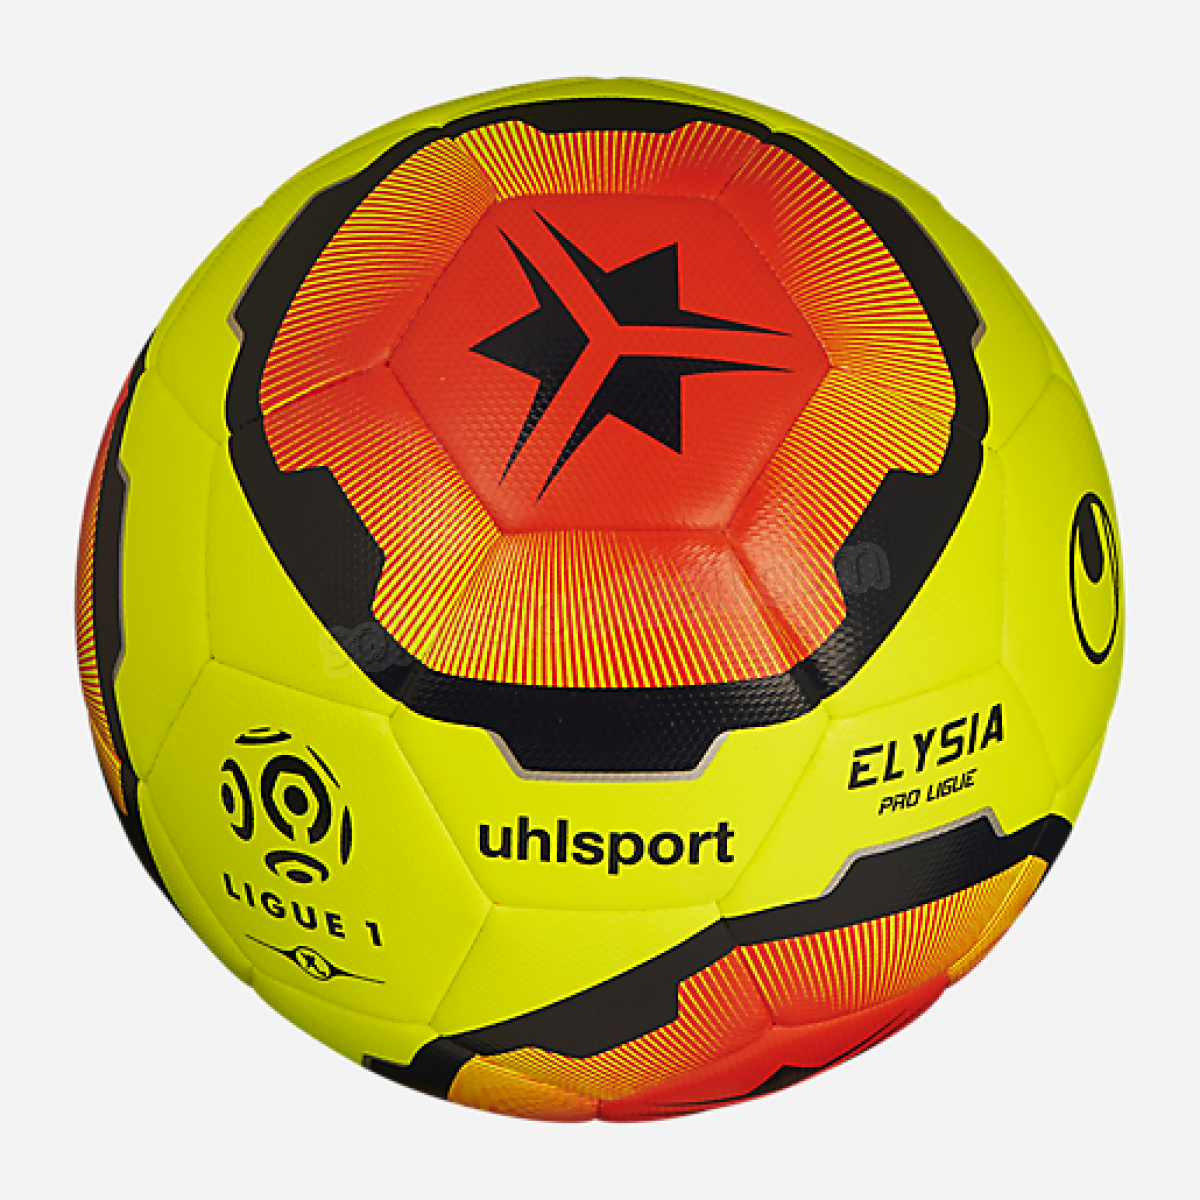 Ballon de football Elysia Pro Ligue-UHLSPORT en solde - Ballon de football Elysia Pro Ligue-UHLSPORT en solde